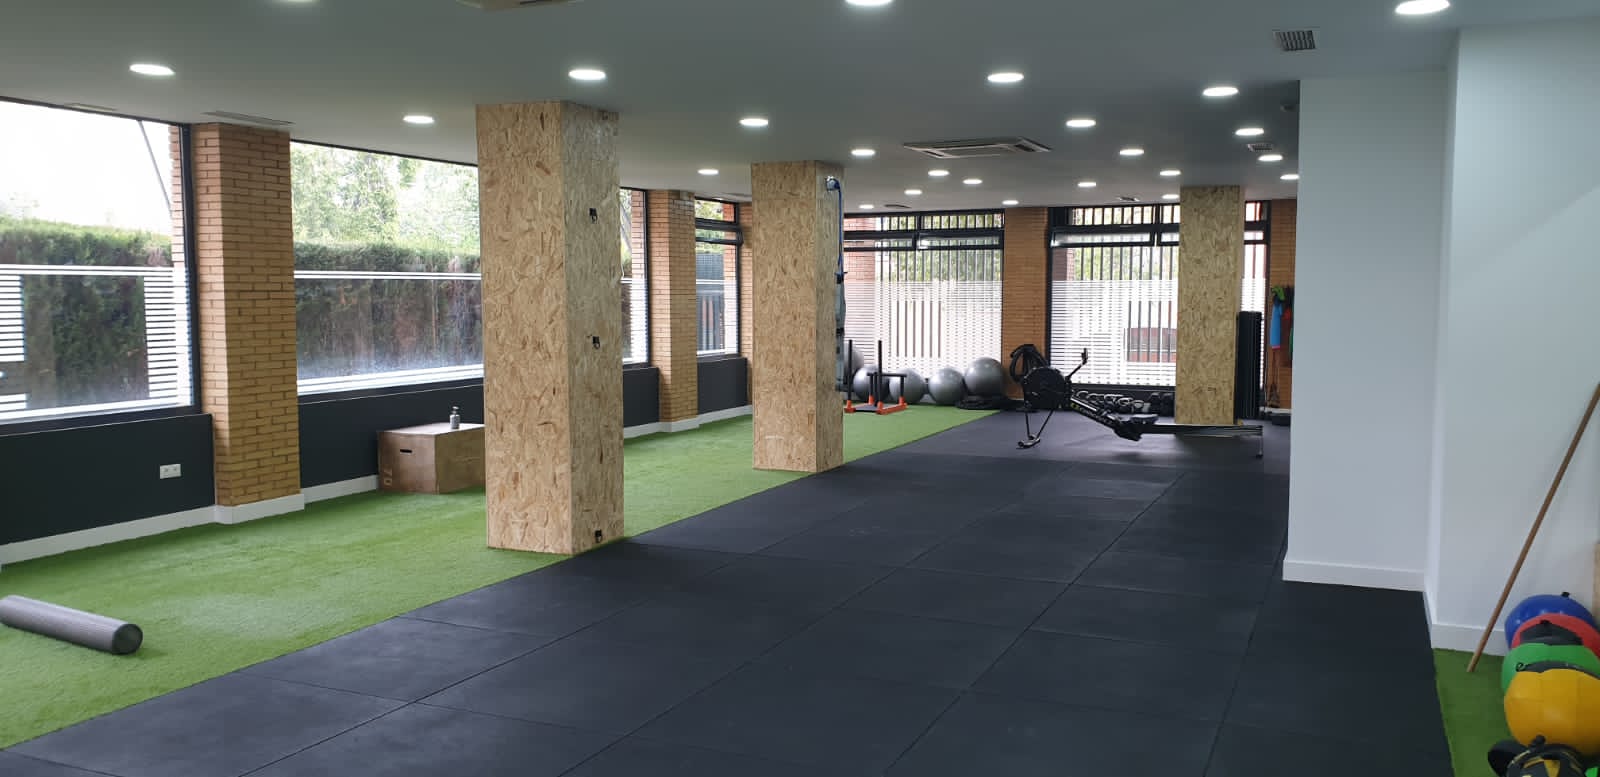 Vistiendo Pisos - Los pisos para gimnasio o gympro son otras de las  soluciones que nos ofrecen el caucho para el recubrimiento de suelos con  productos de alta resistencia a las actividades